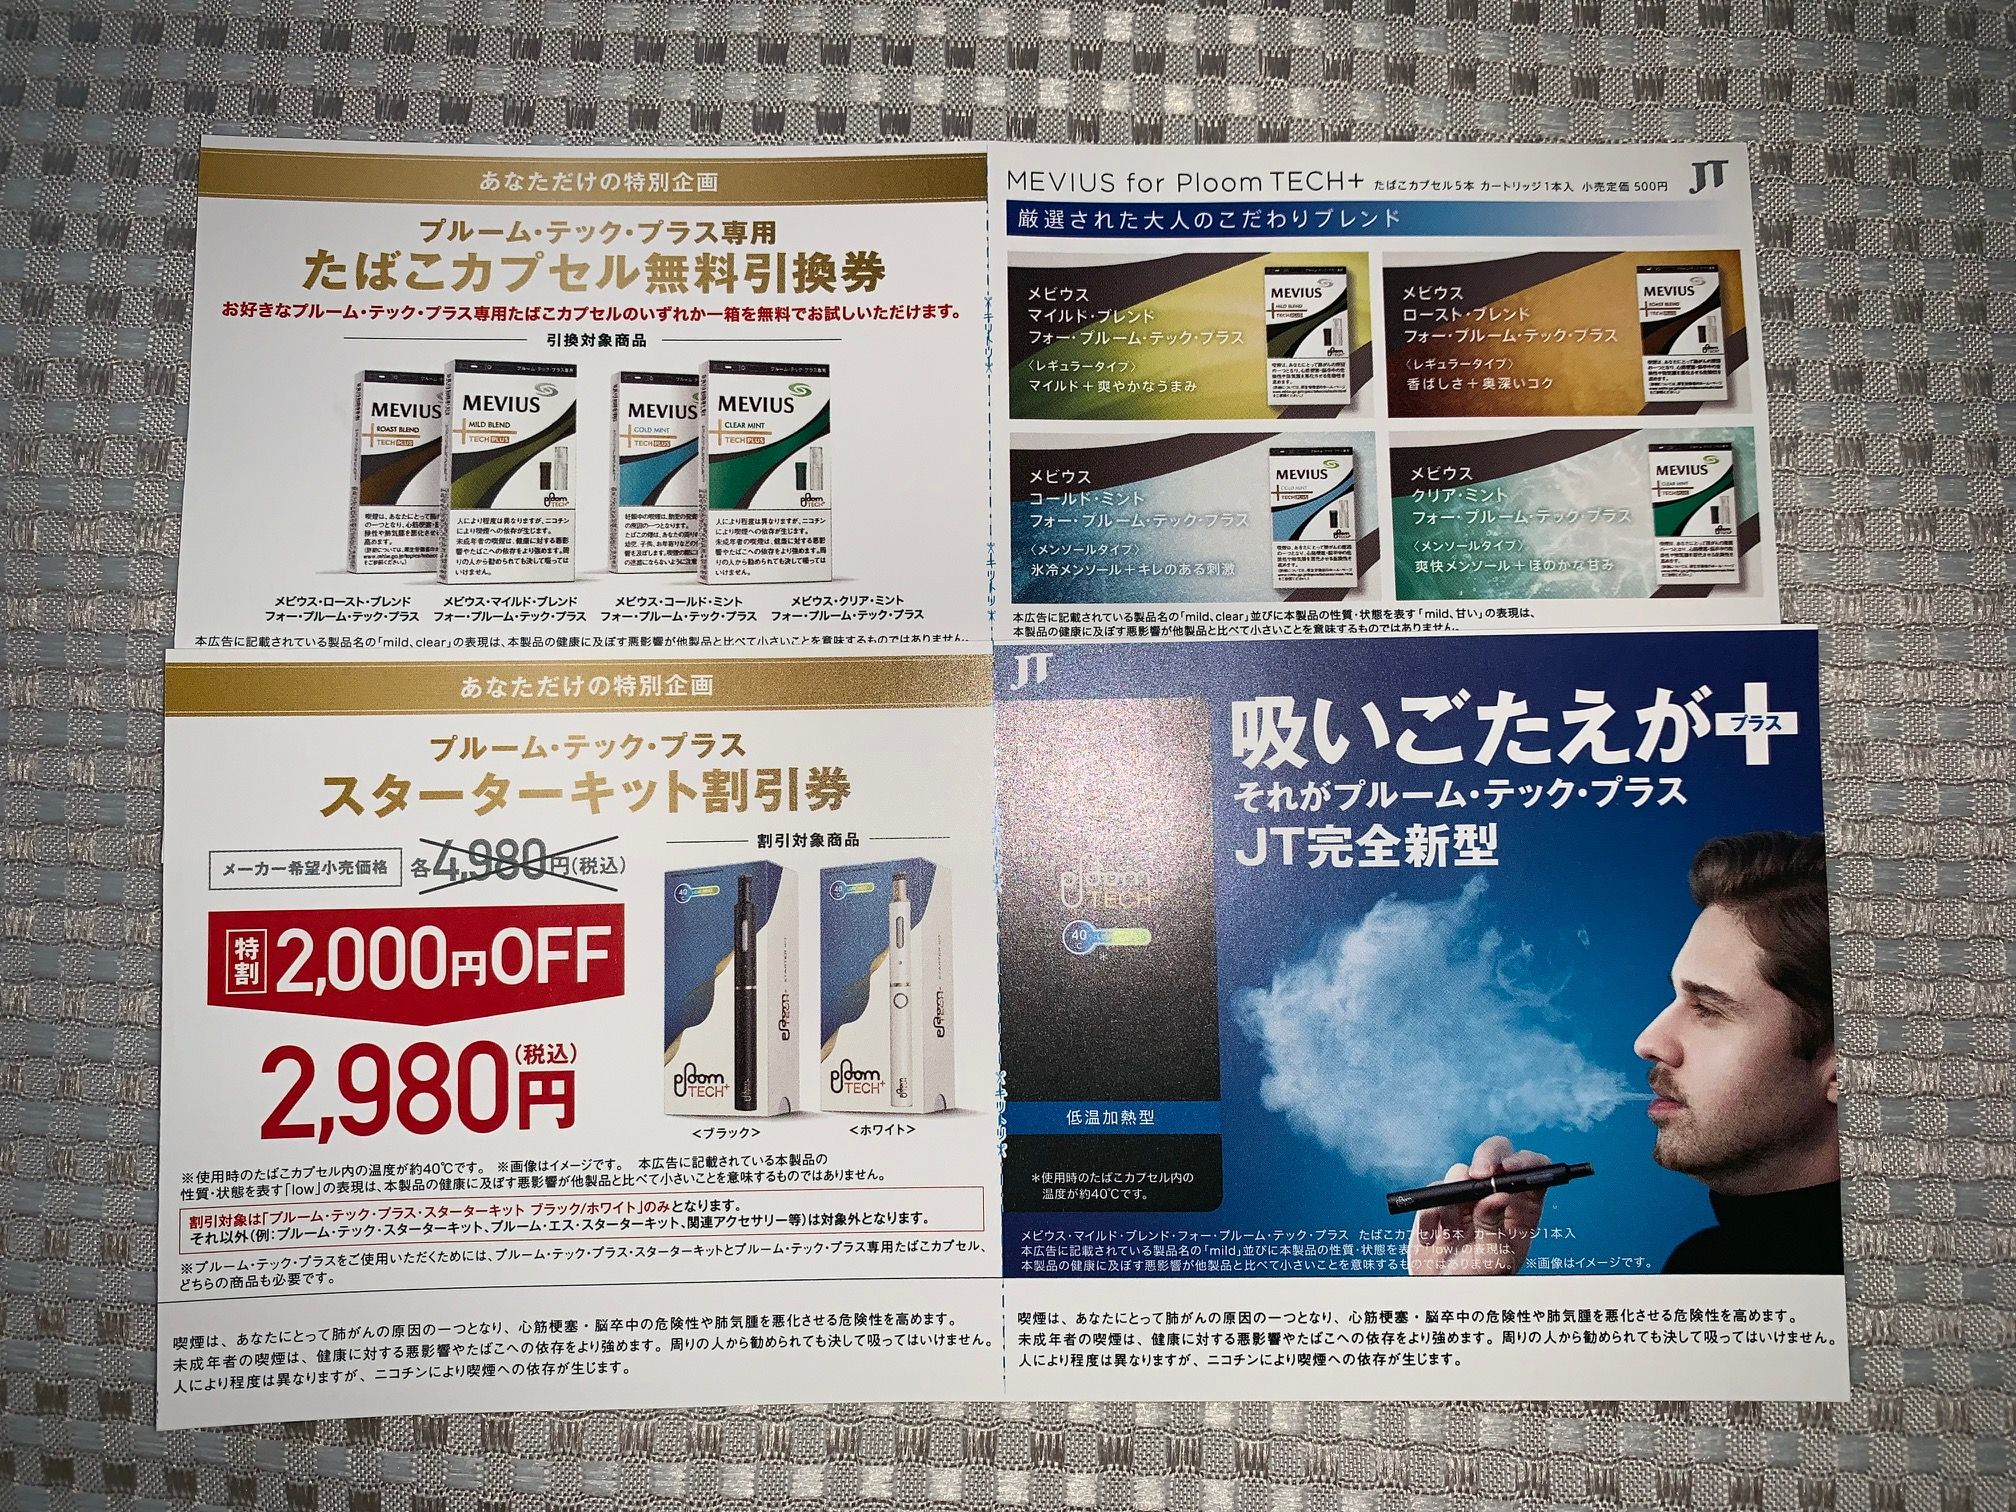 JT日本たばこ×ファミリーマート プルーム・テック・プラス・スターターキット割引券＆プラス専用たばこカプセル無料引換券